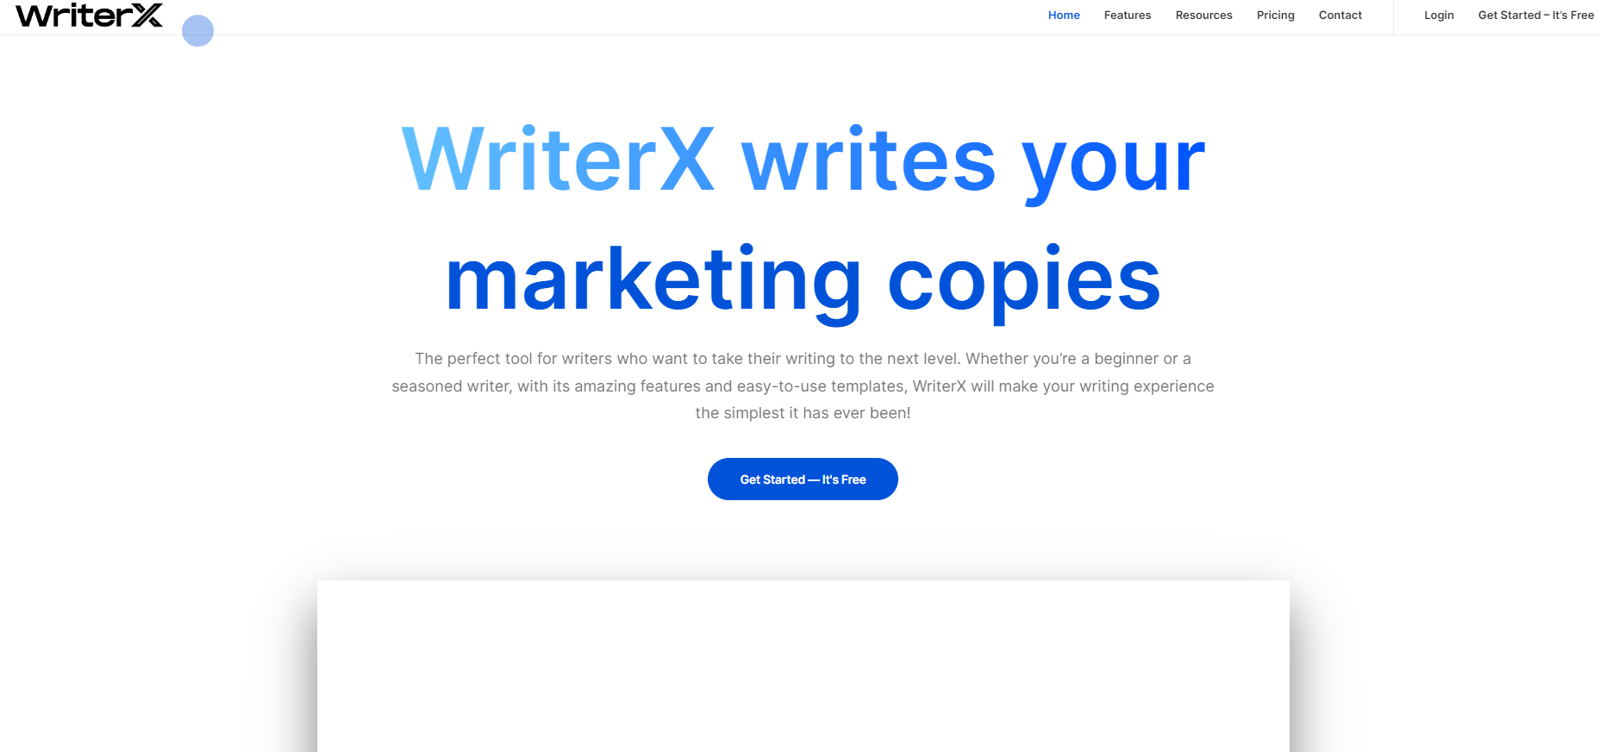 WriterX website